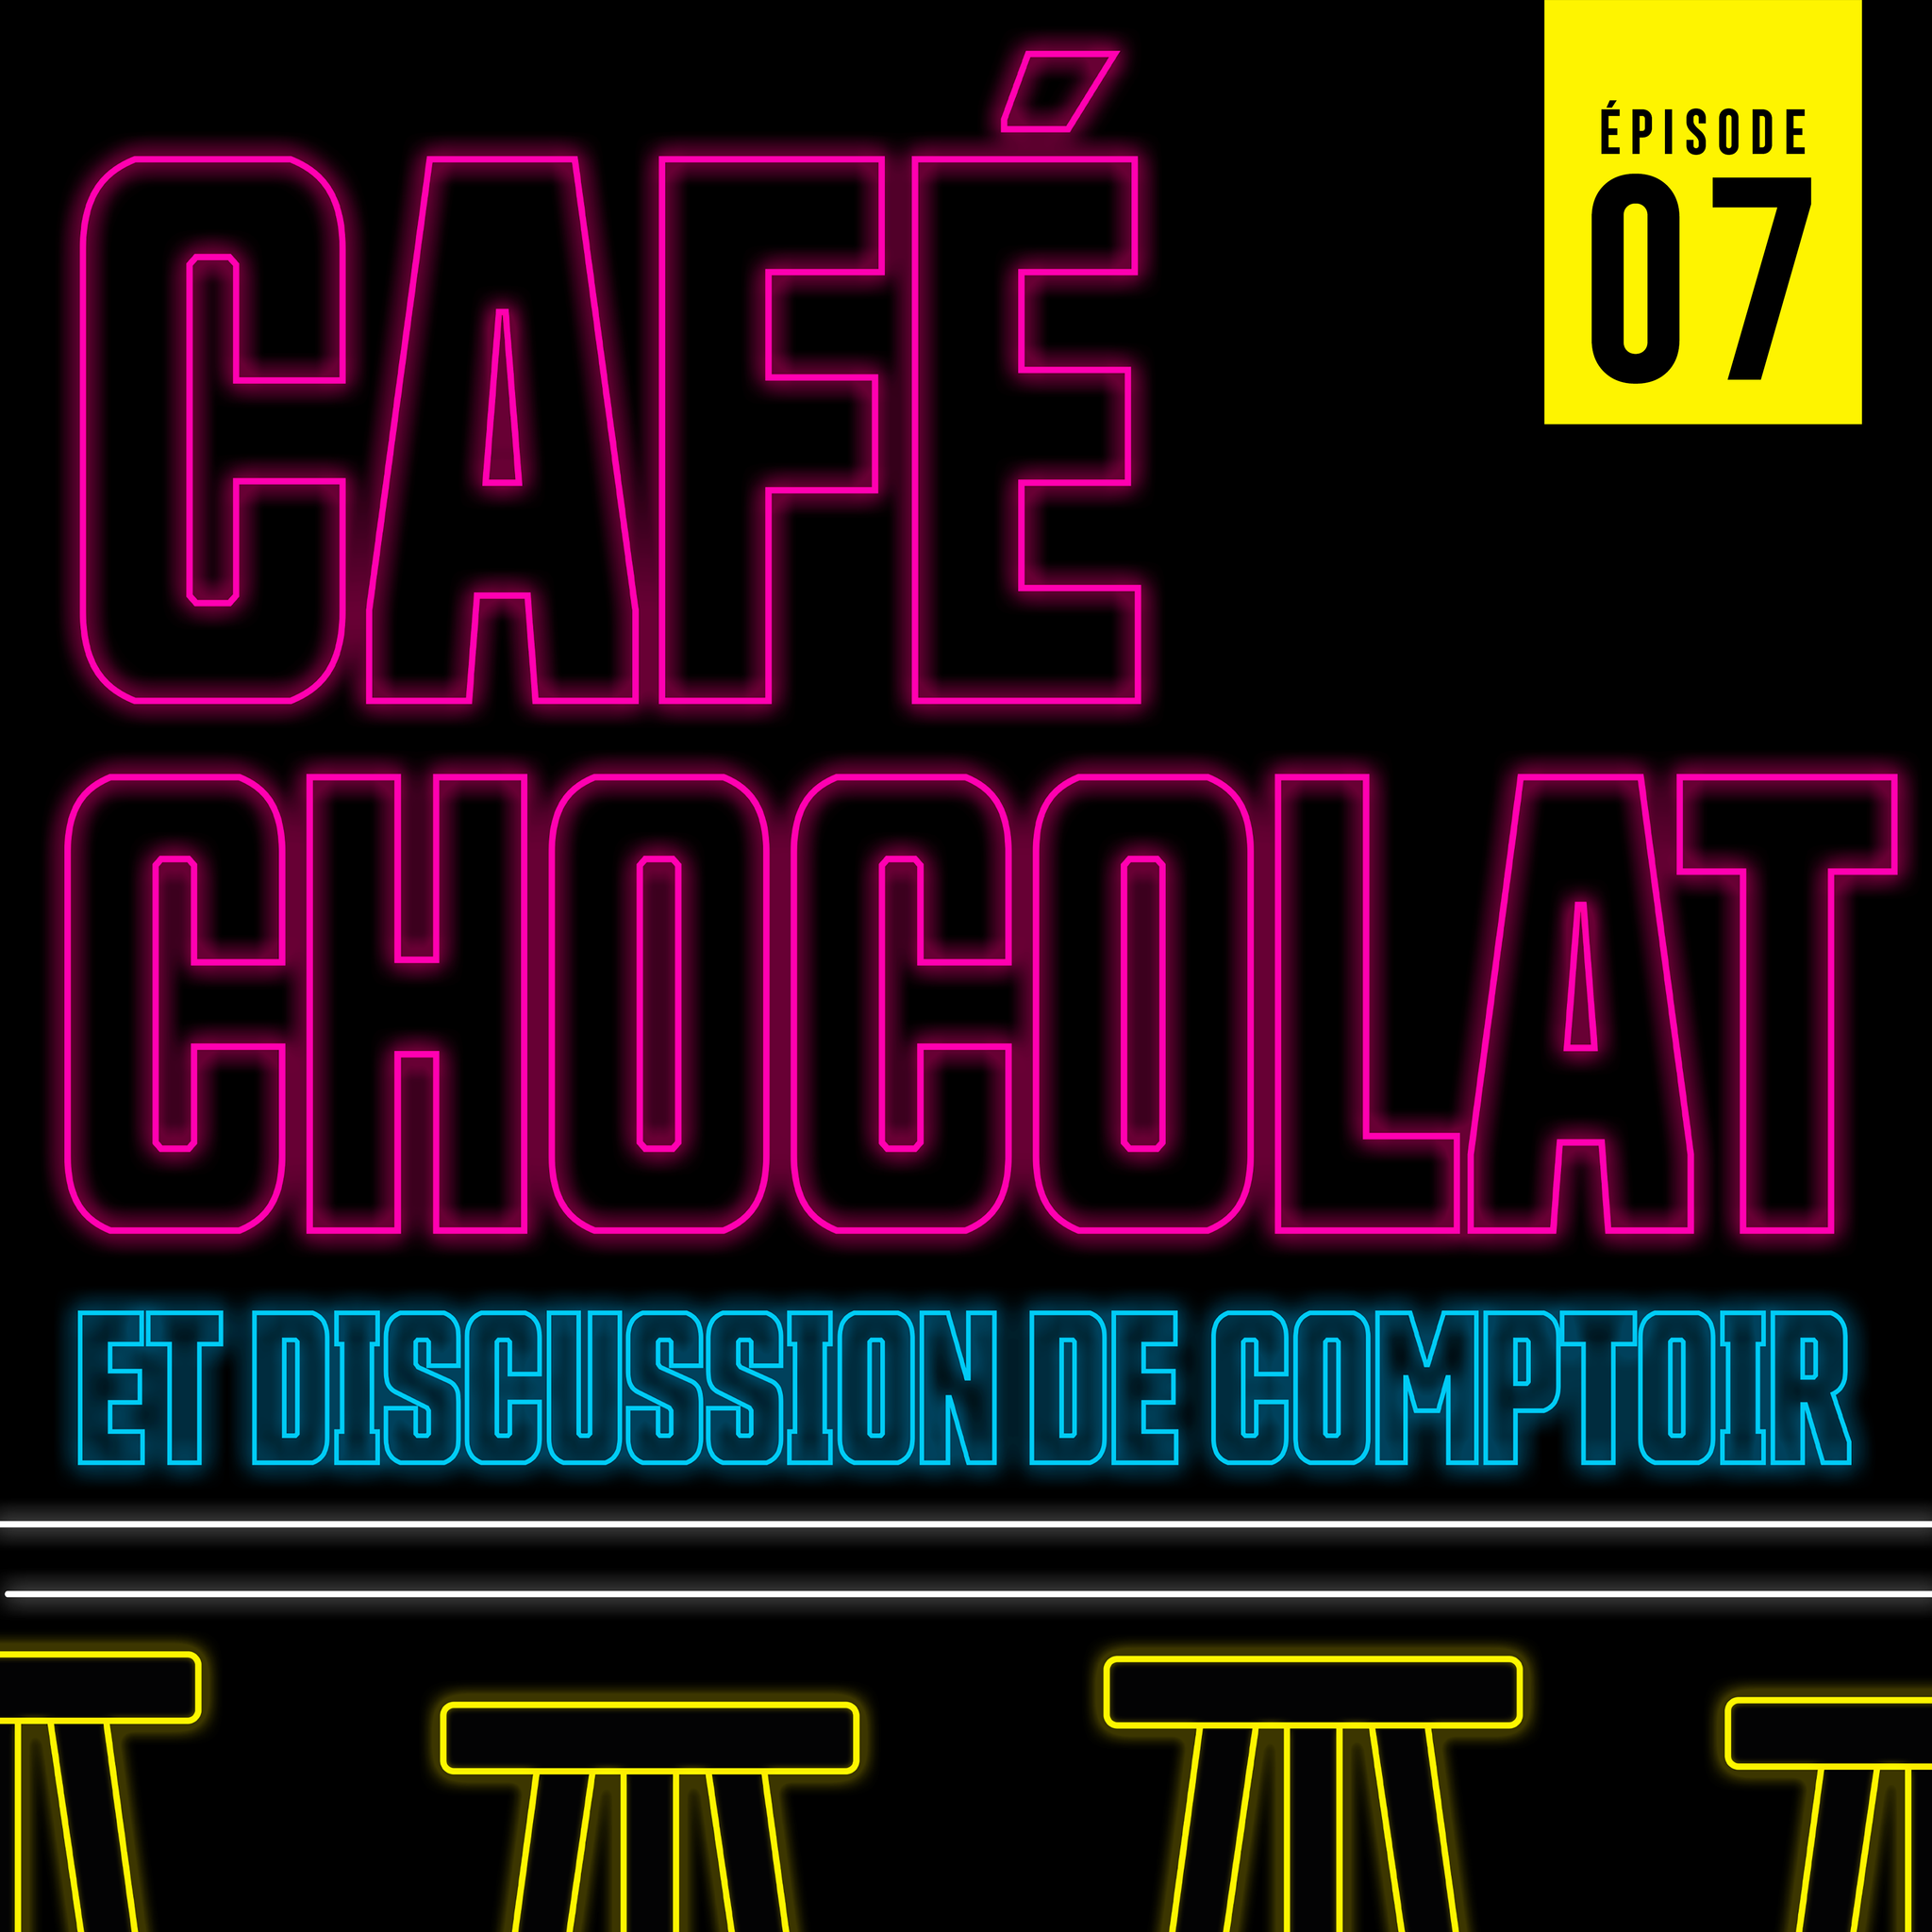 Café, Chocolat et discussion de comptoir - Épisode 07